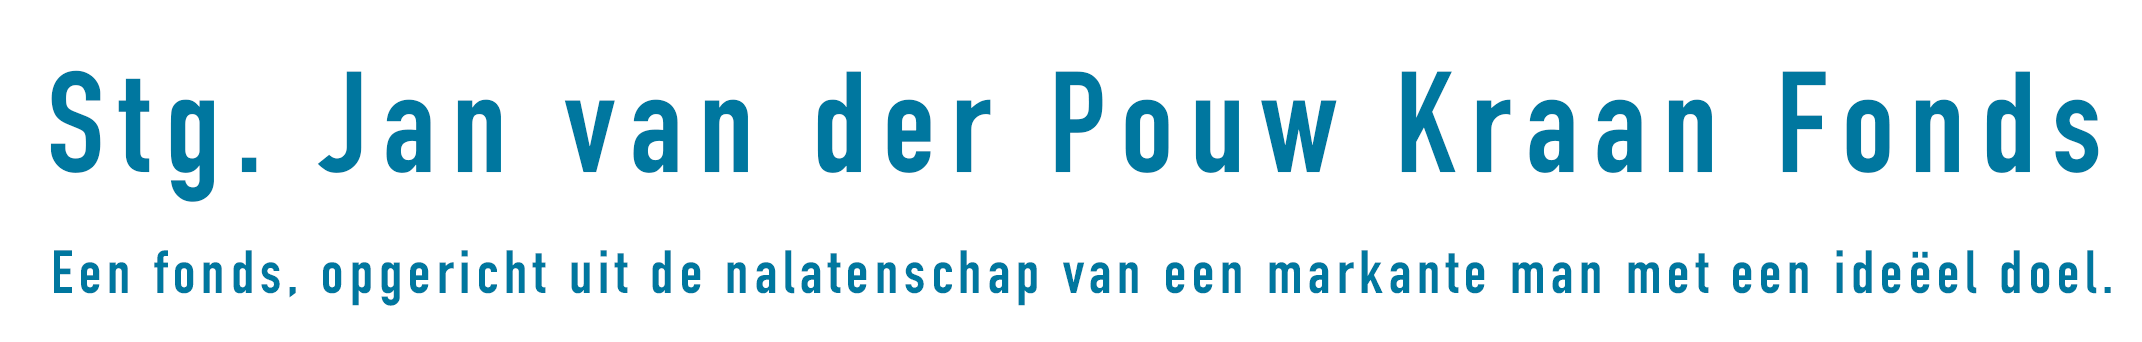 stichting Jan van der Pouw Kraan Fonds